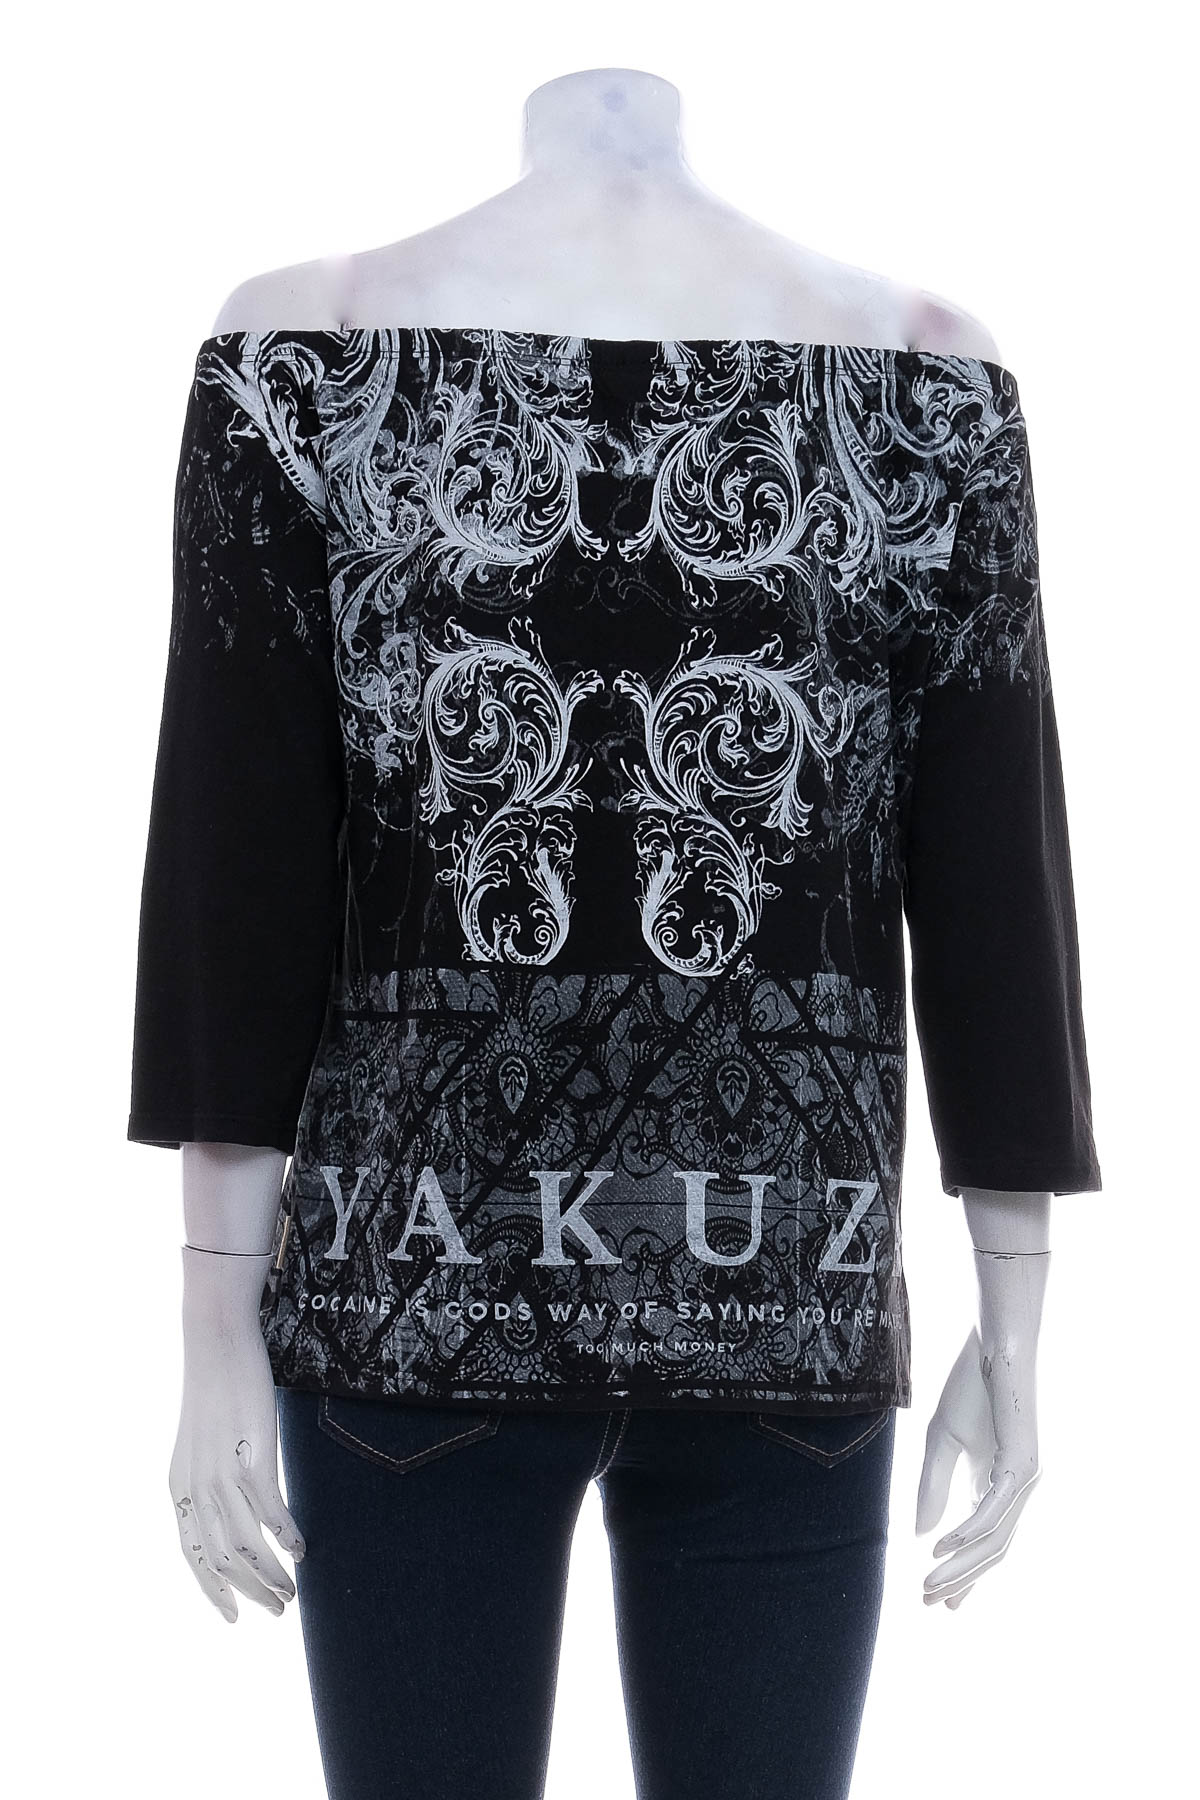 Γυναικεία μπλούζα - Yakuza - 1